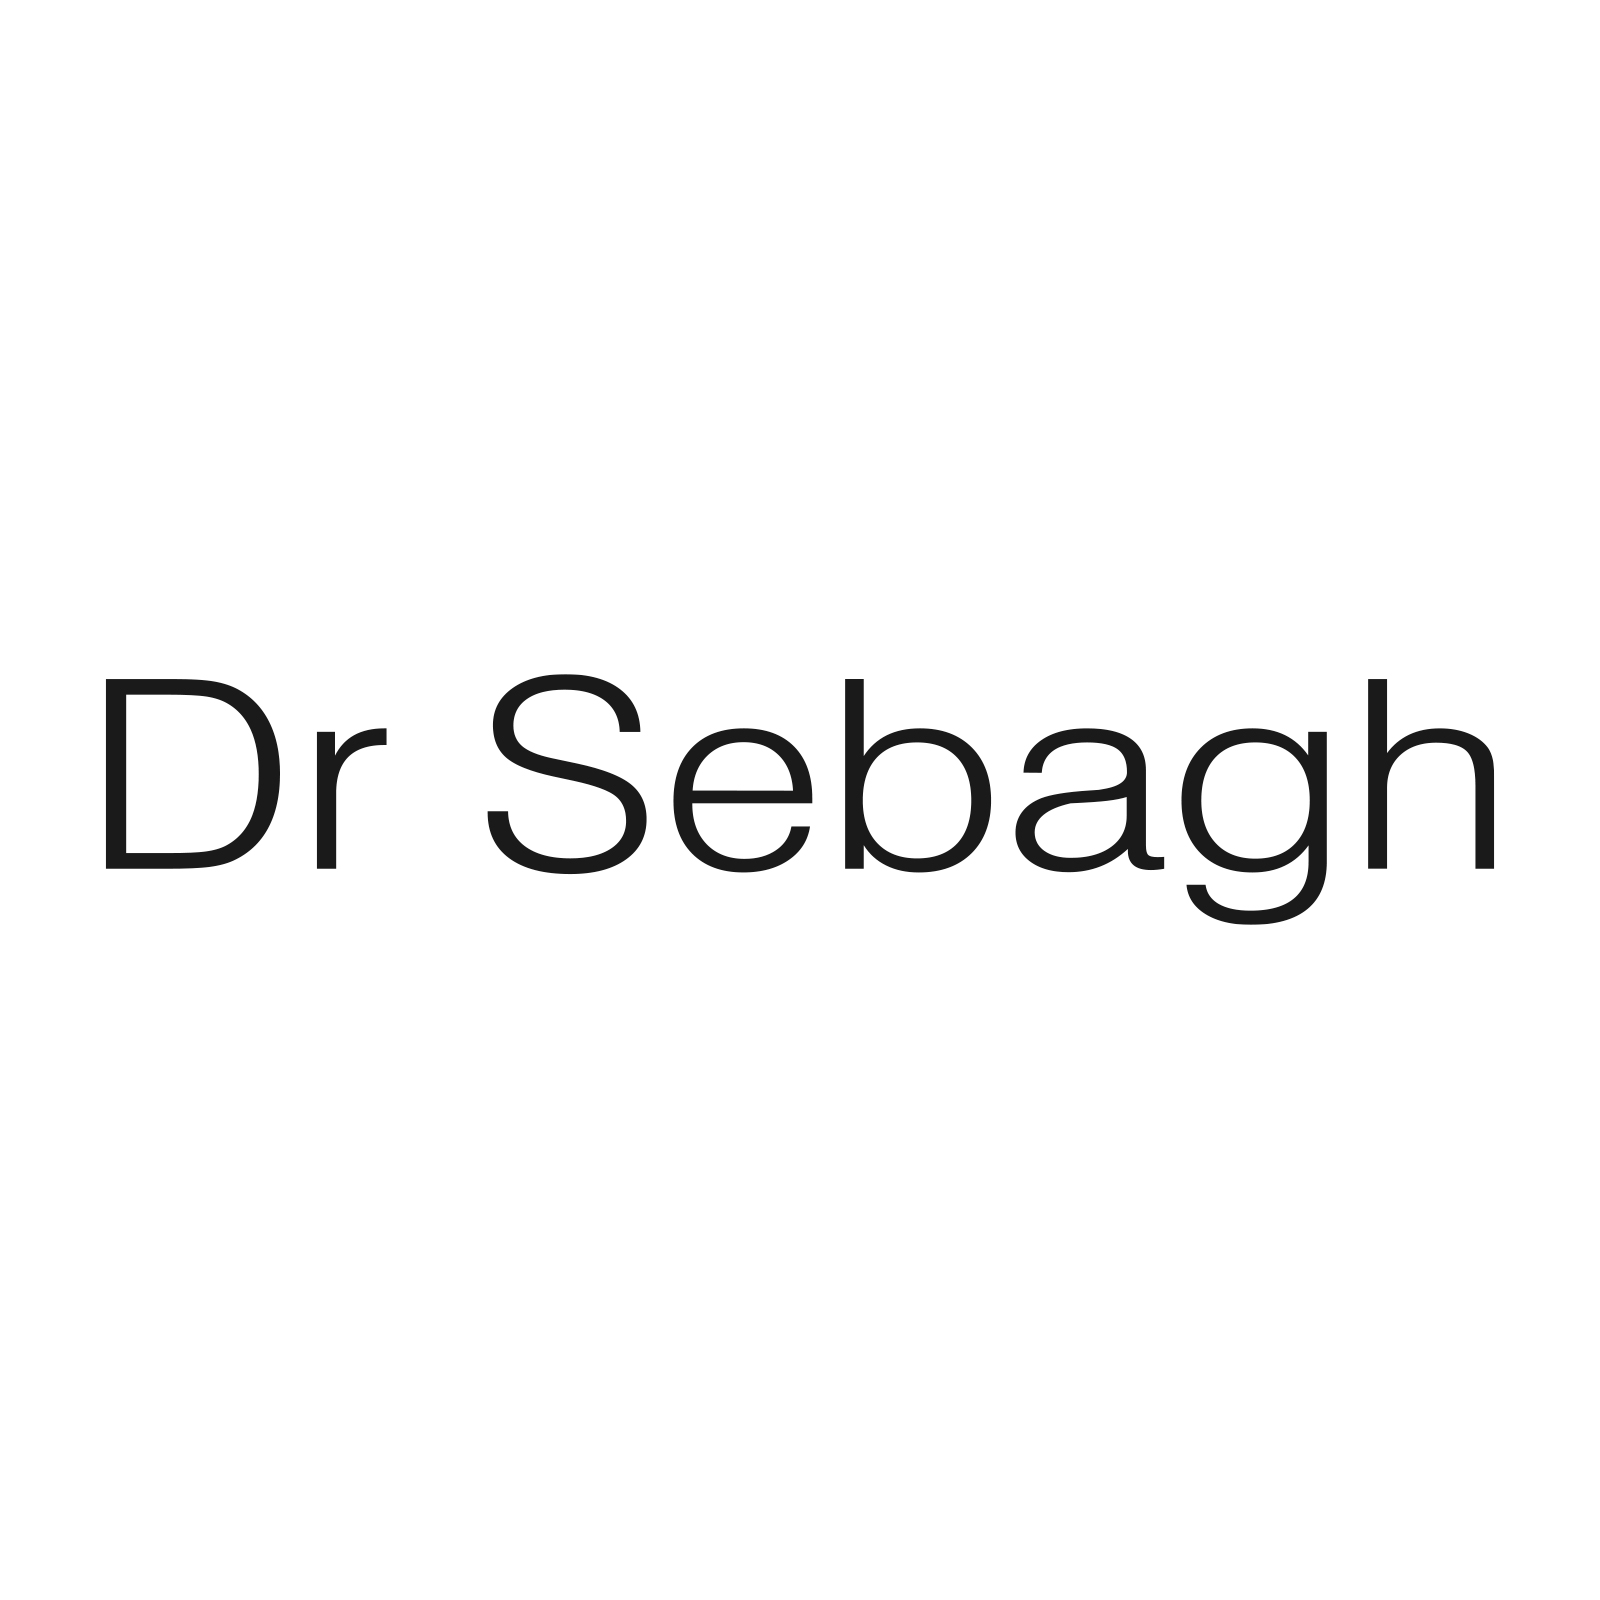 DR SEBAGH